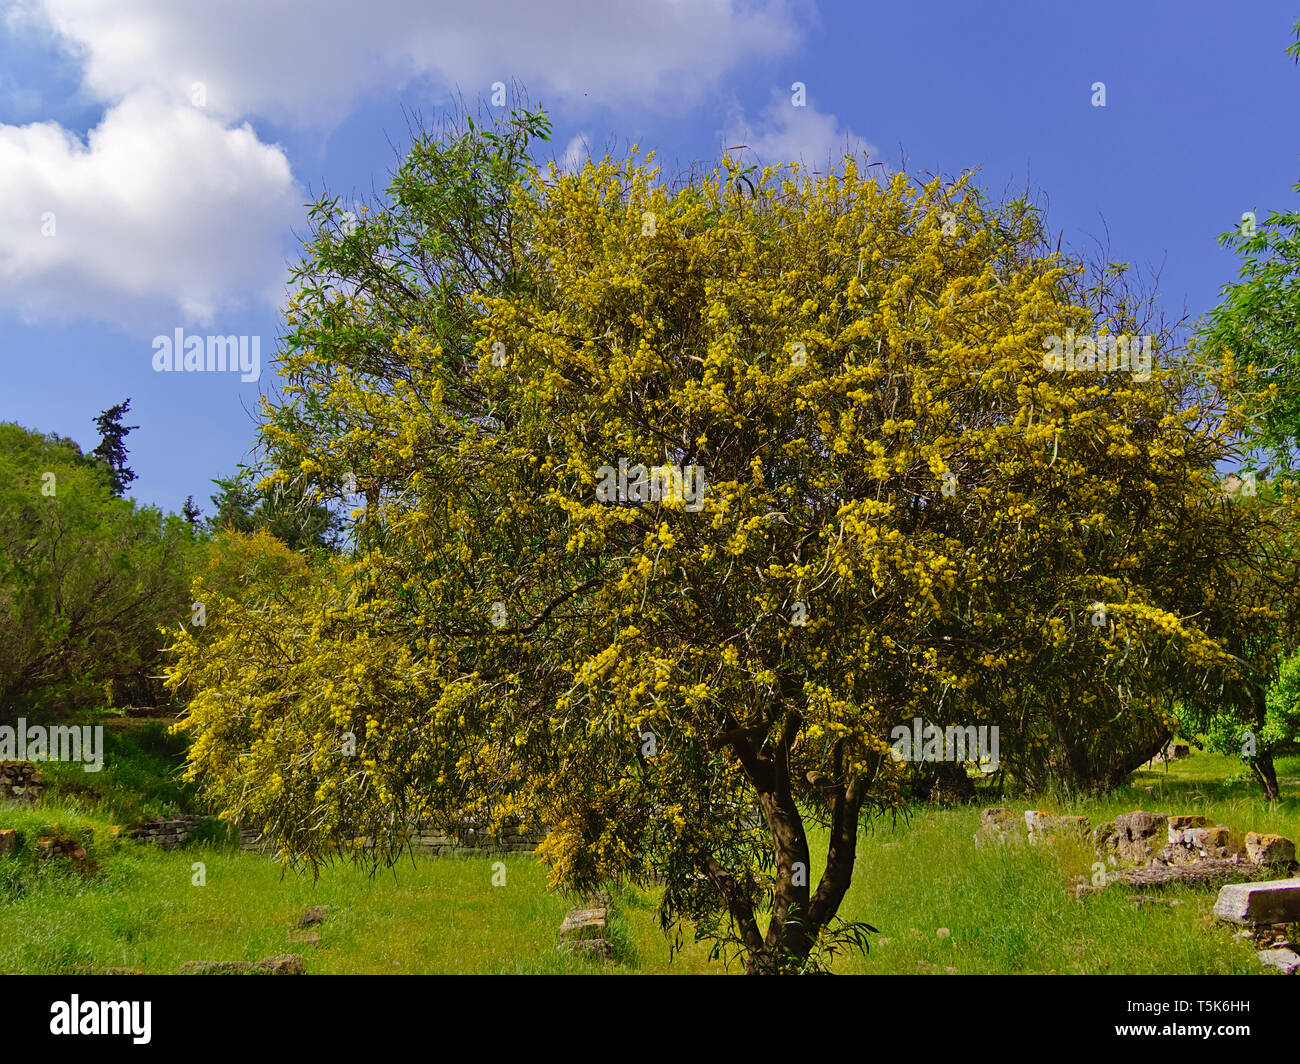 Bella colorata Mimosa (Acacia Baileyana) albero pieno di fiori di colore giallo. Il contrasto con vivid blue sky. Molla di vibranti immagine. Foto Stock